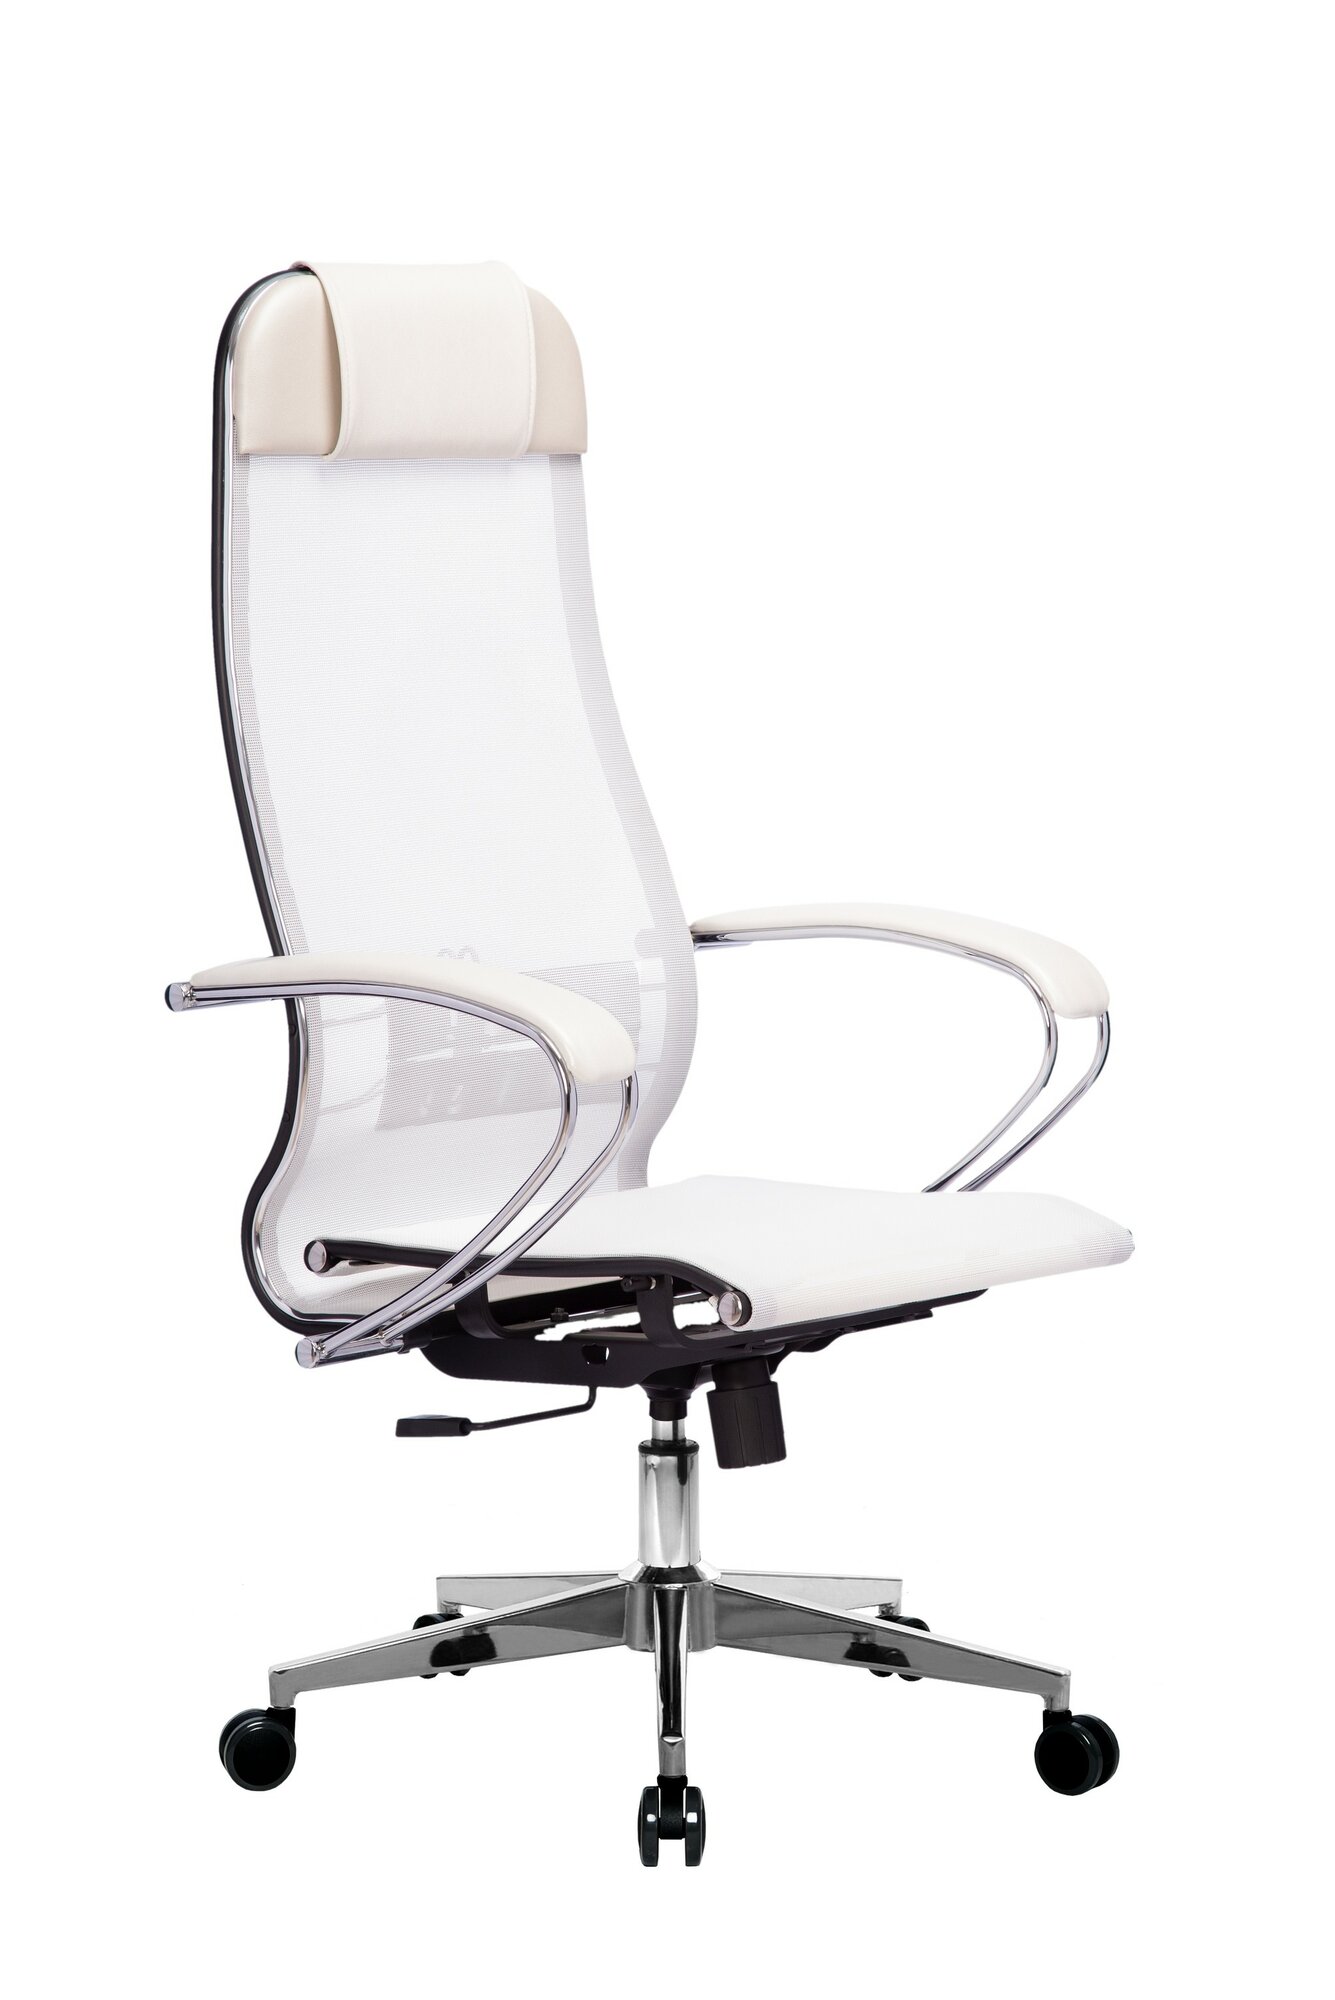 Кресло компьютерное Metta MPRU, кресло офисное, кресло компьютерное, кресло для дома и офиса, кресло самурай, кресло Metta (Белый)